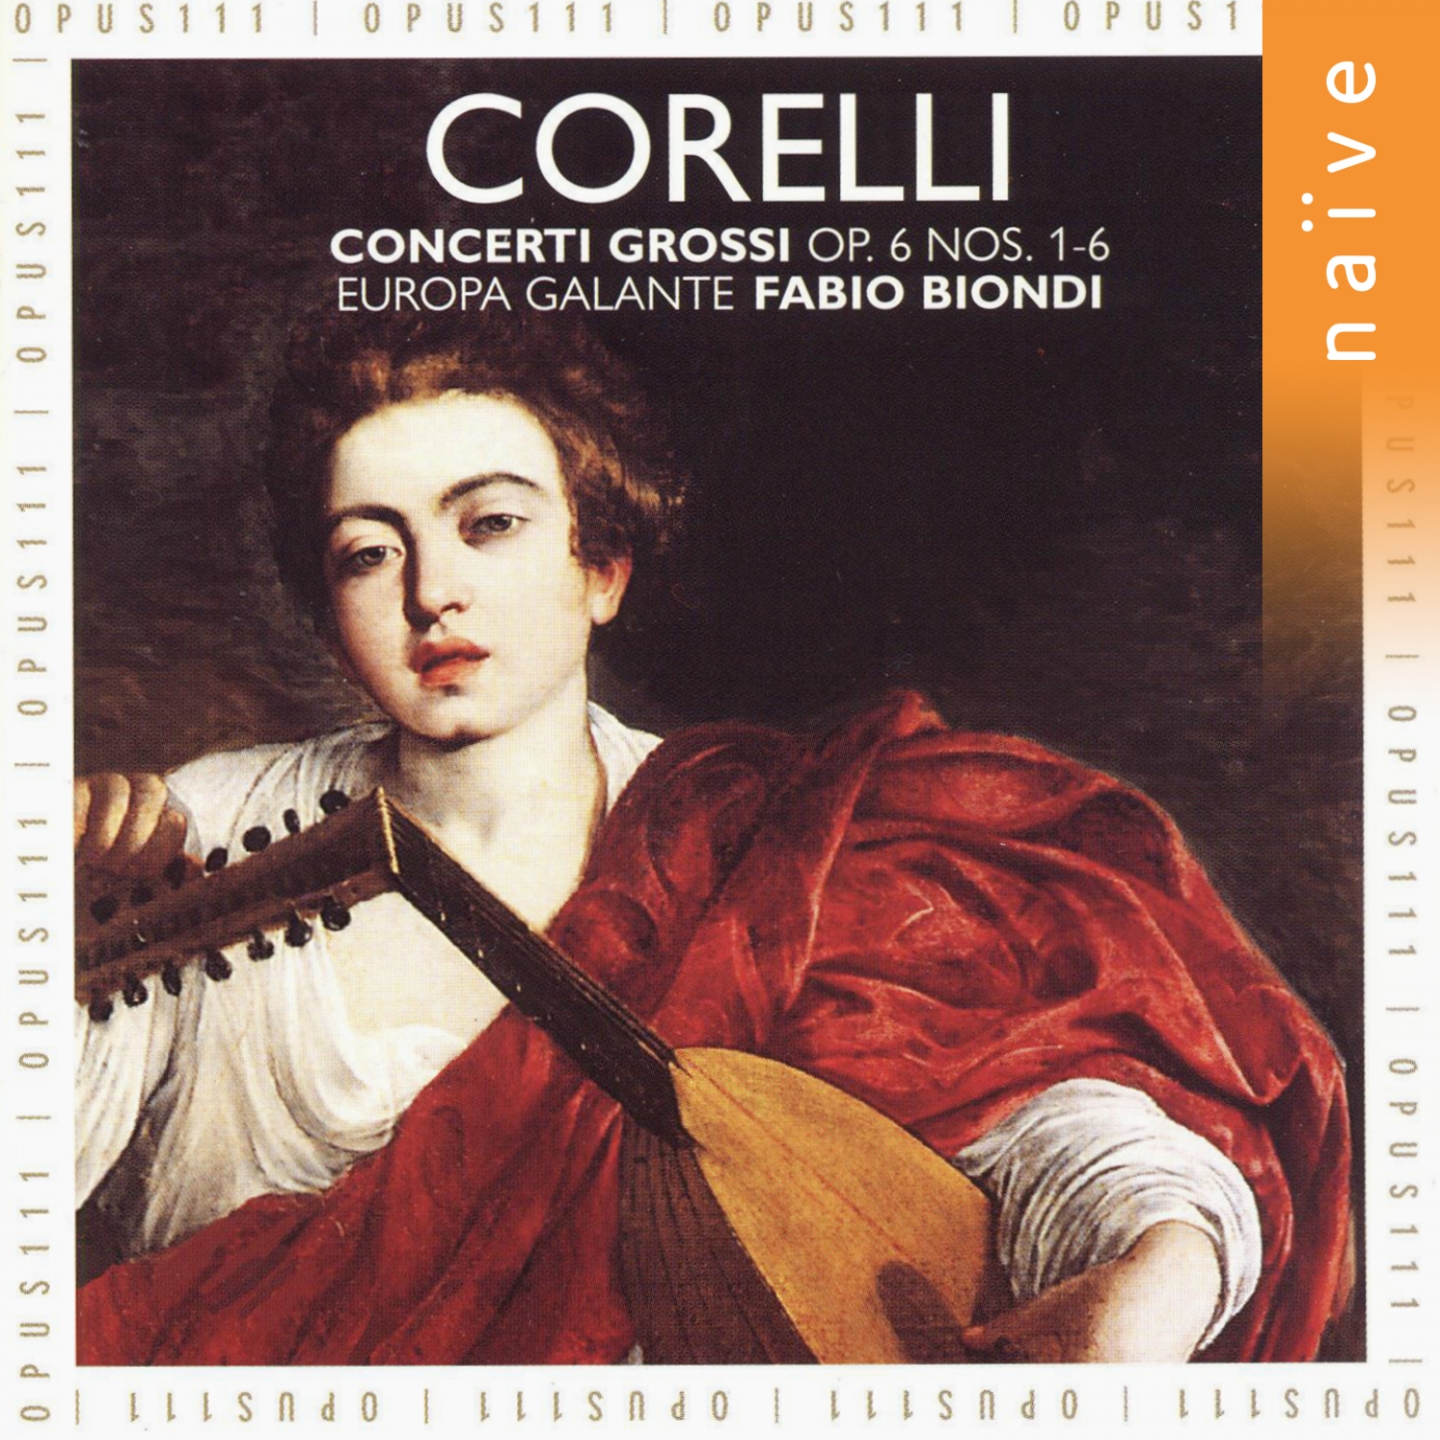 12 Concerti Grossi, Op. 6, No. 5 in B-Flat Major: I. Adagio - Allegro